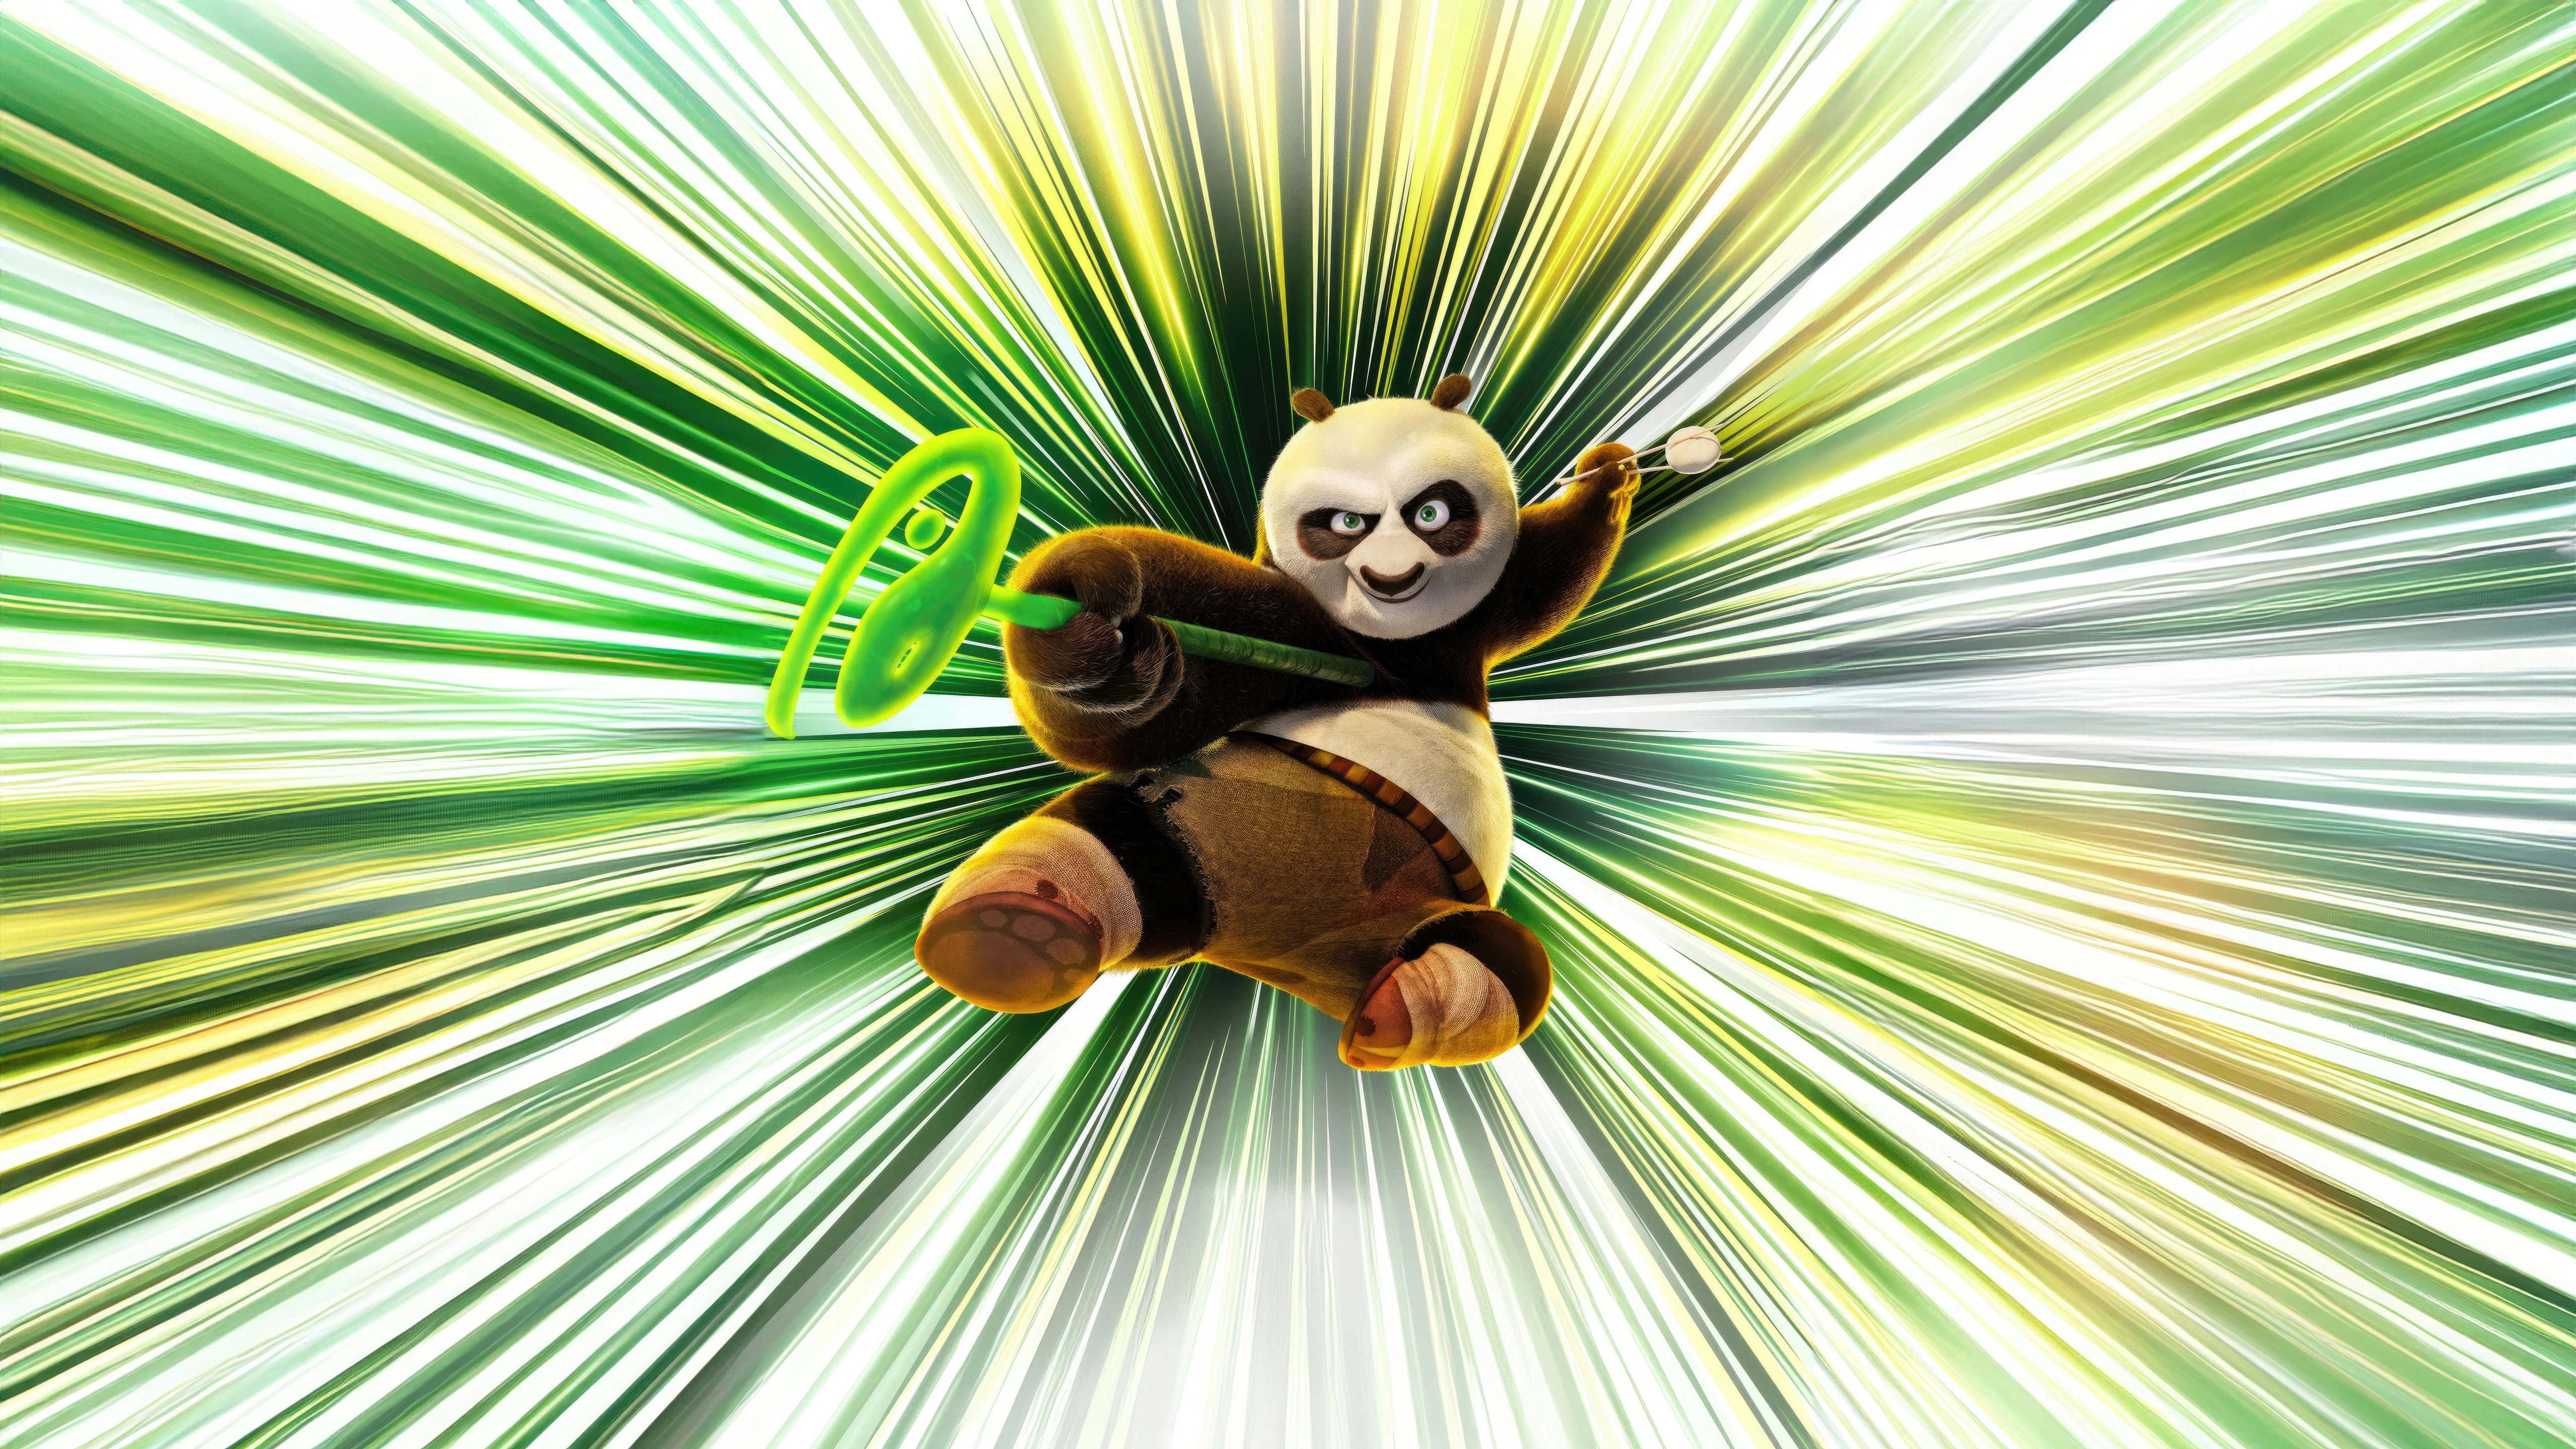 po in kung fu panda 4 cv.jpg